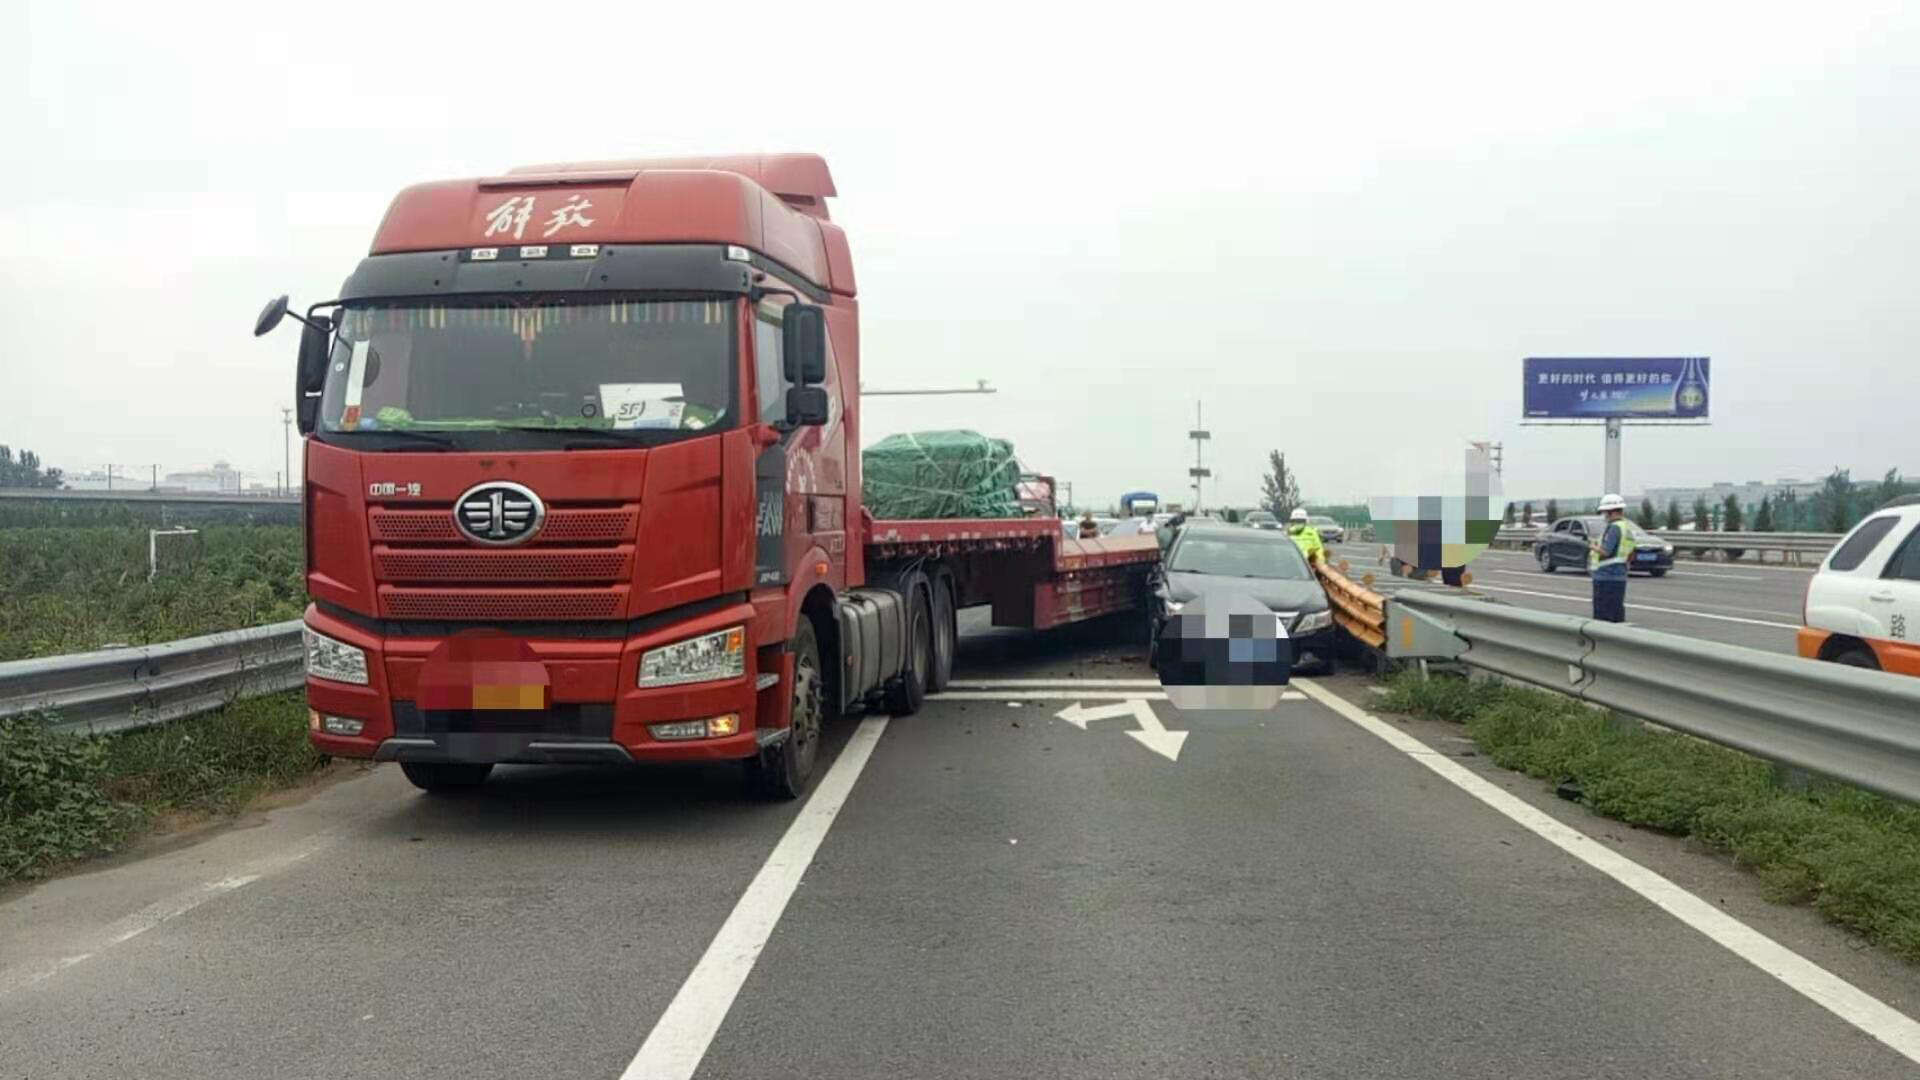 京港澳高速北京方向三辆货车追尾 其中一辆侧翻_搜狐汽车_搜狐网